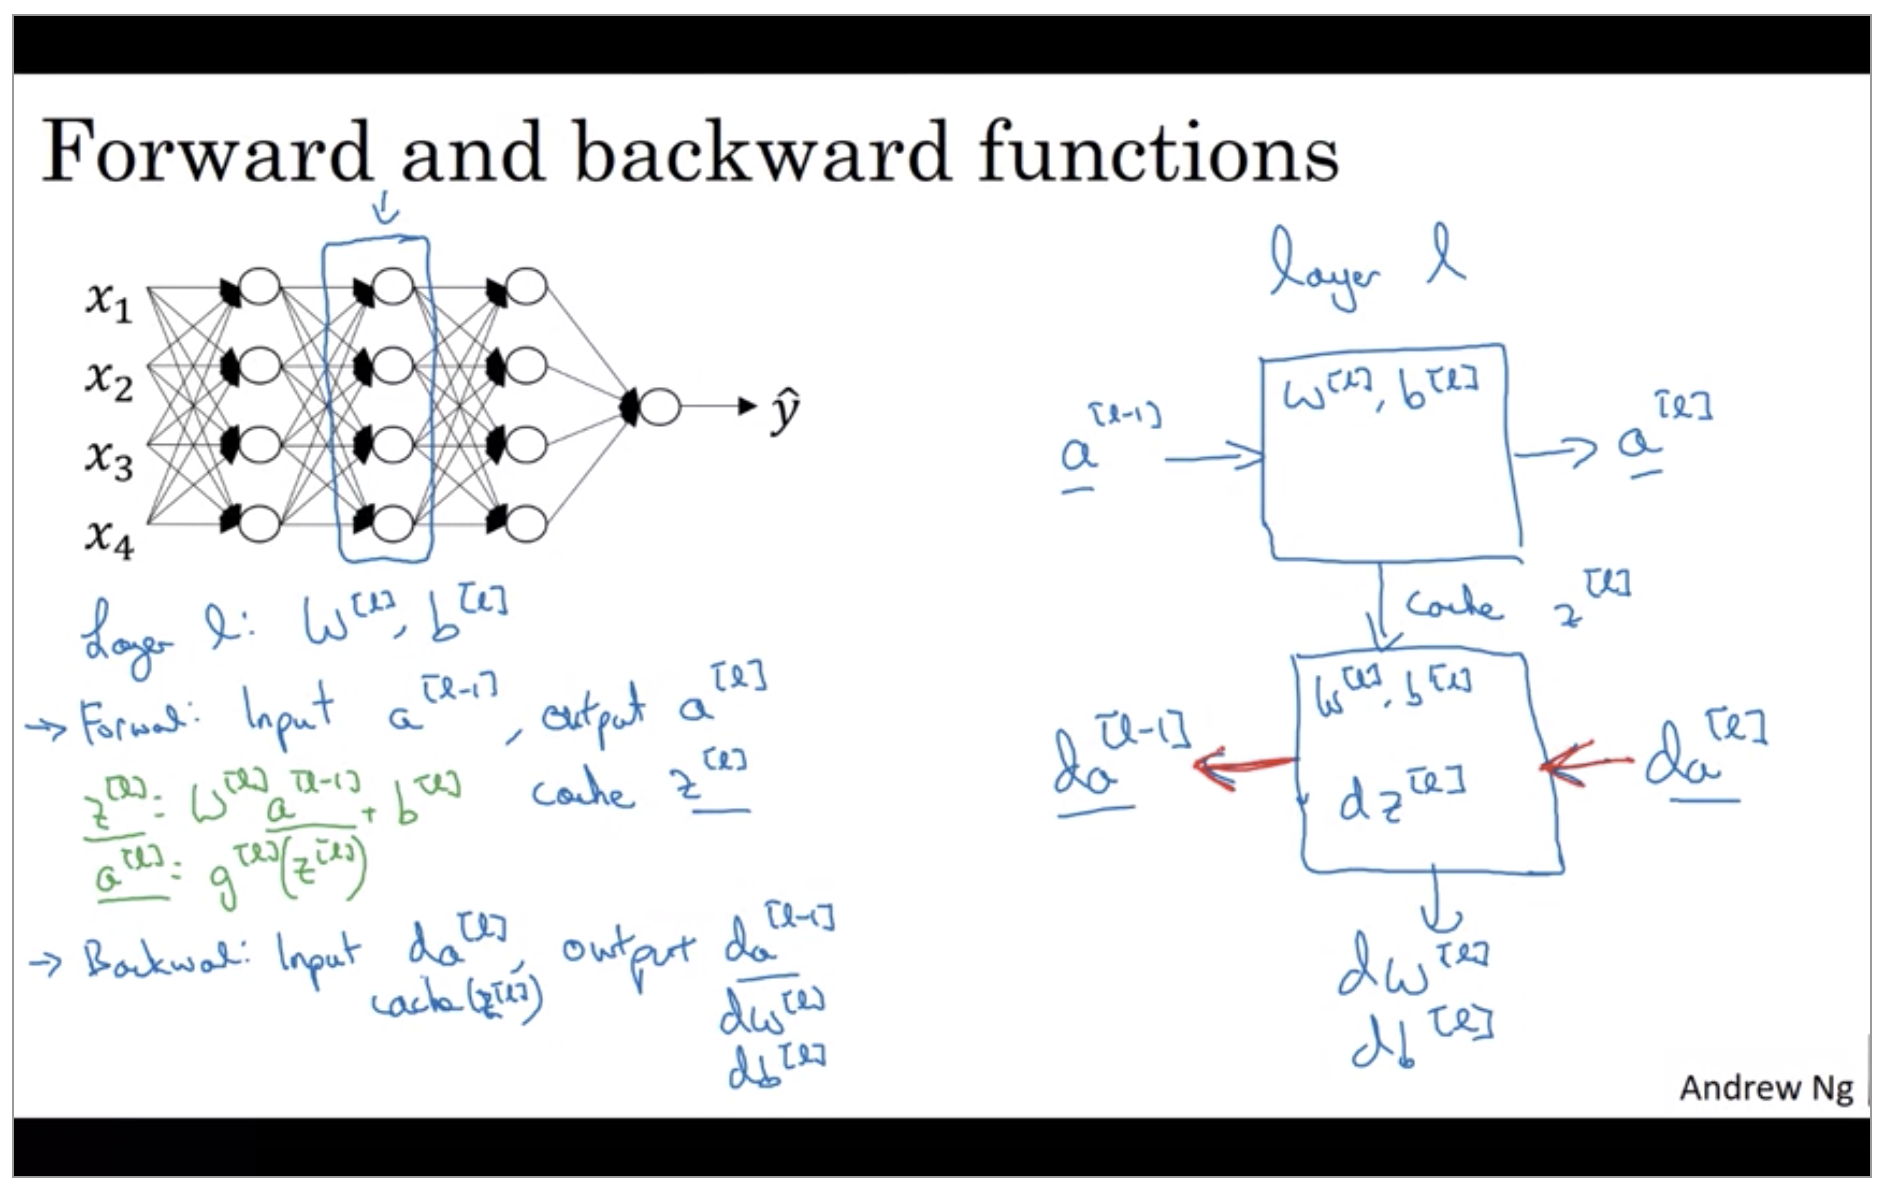 forward-and-backward-functions.png